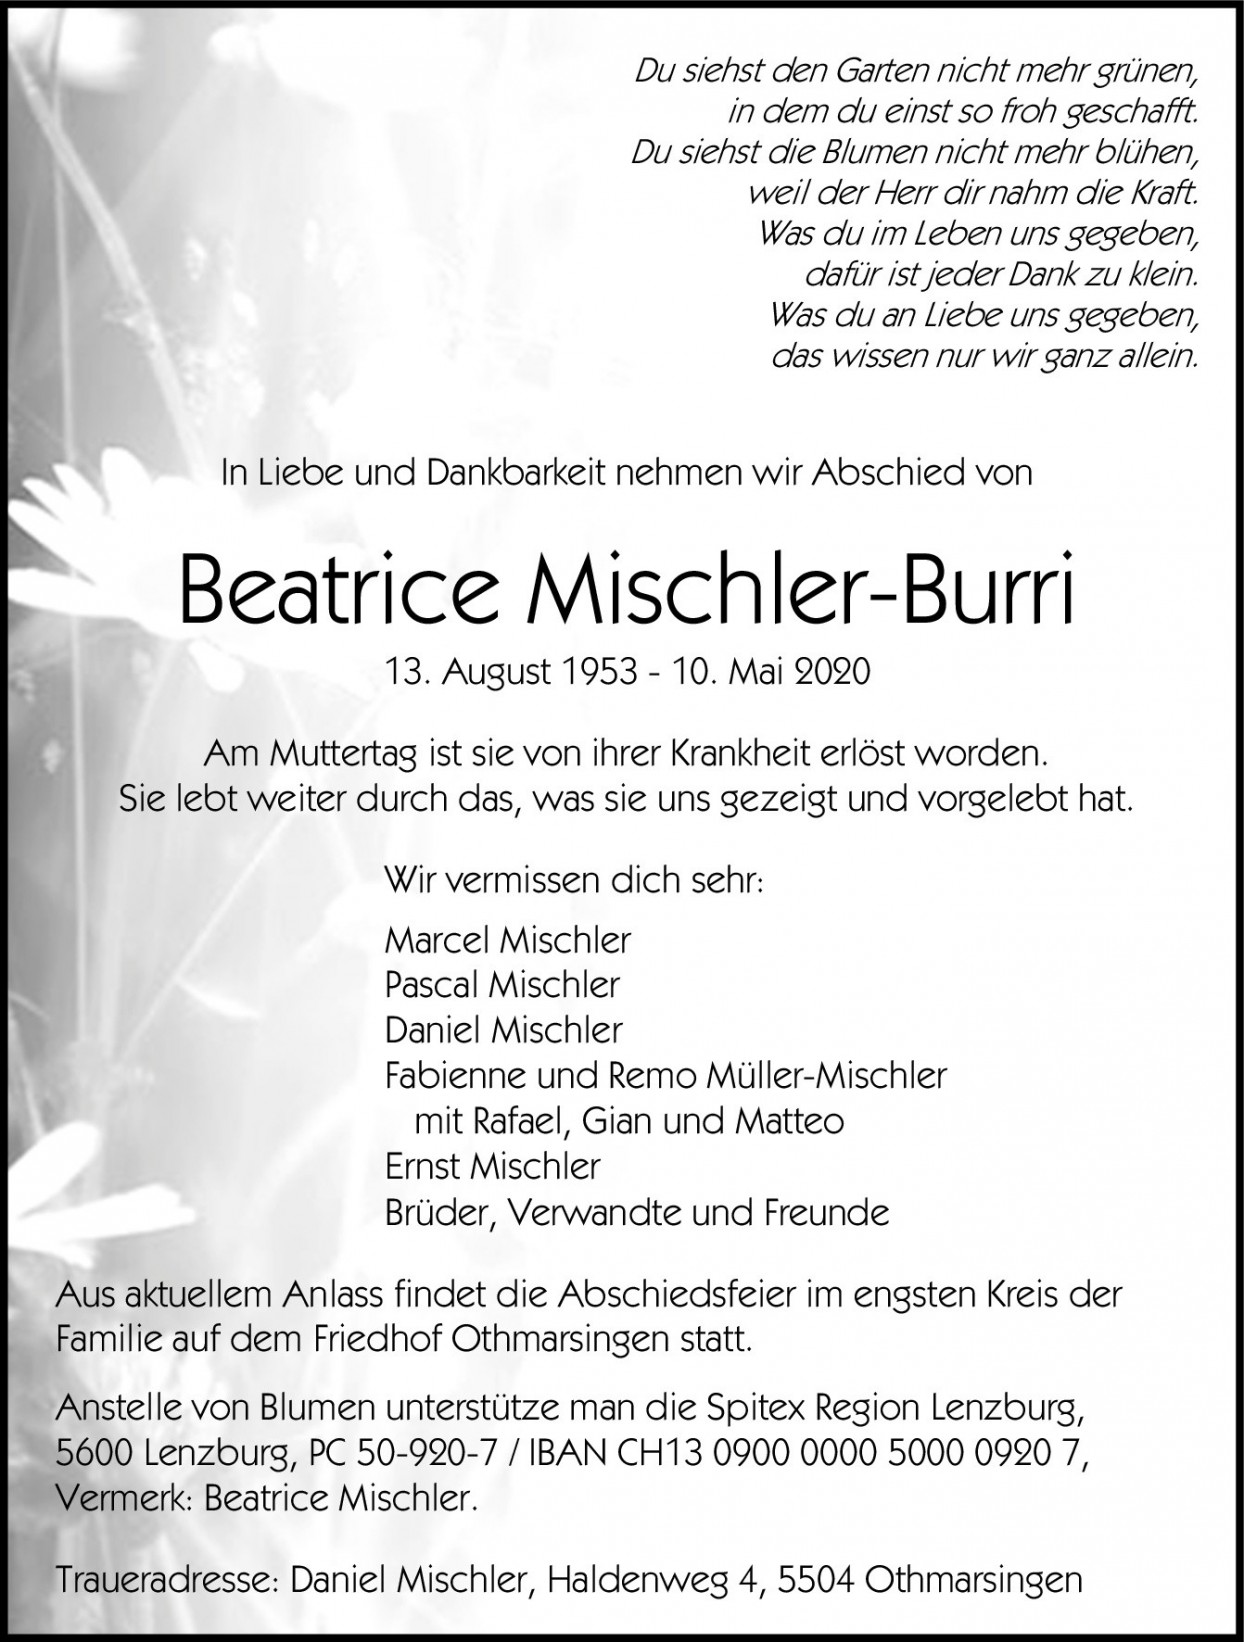 Beatrice Mischler-Burri